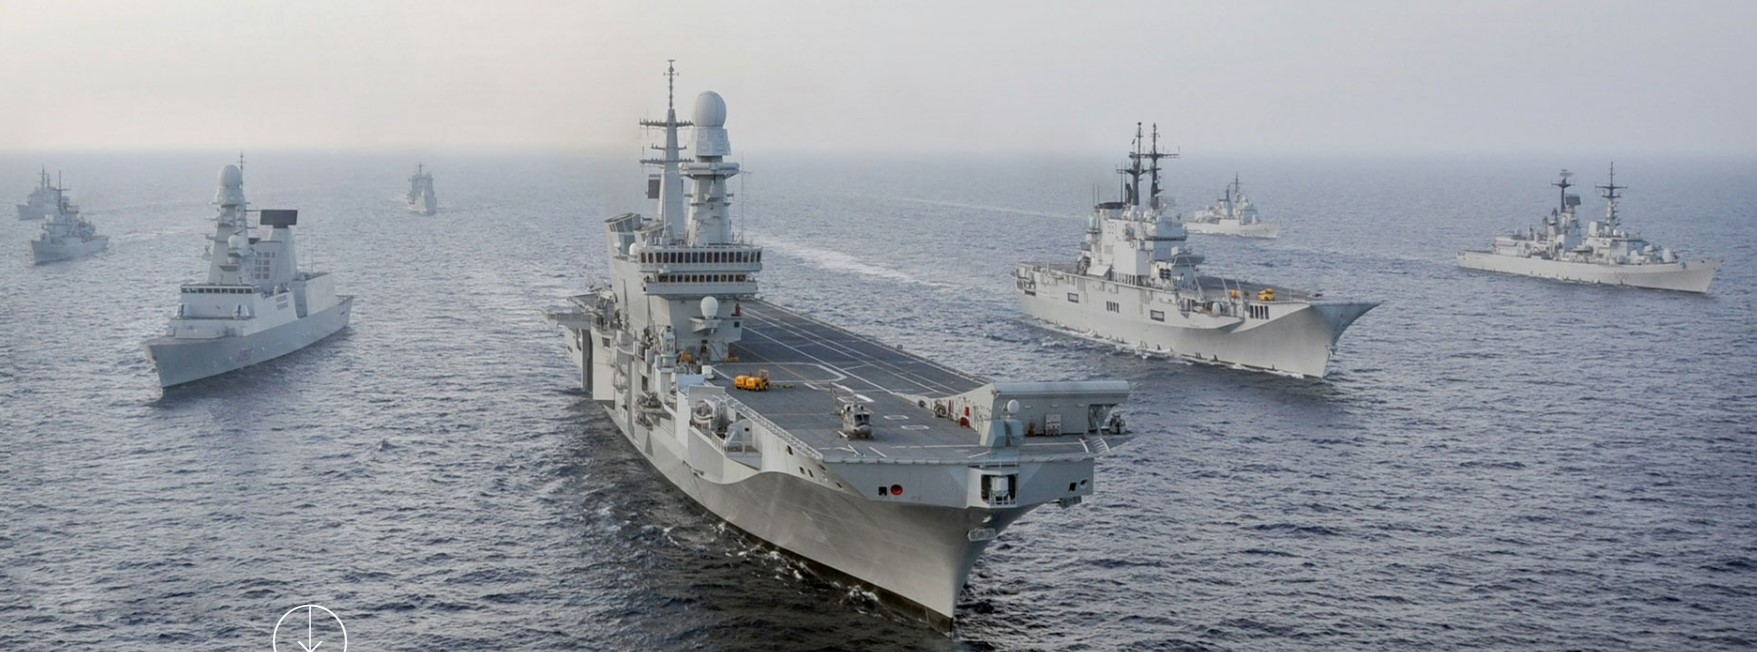 flotta italiana 